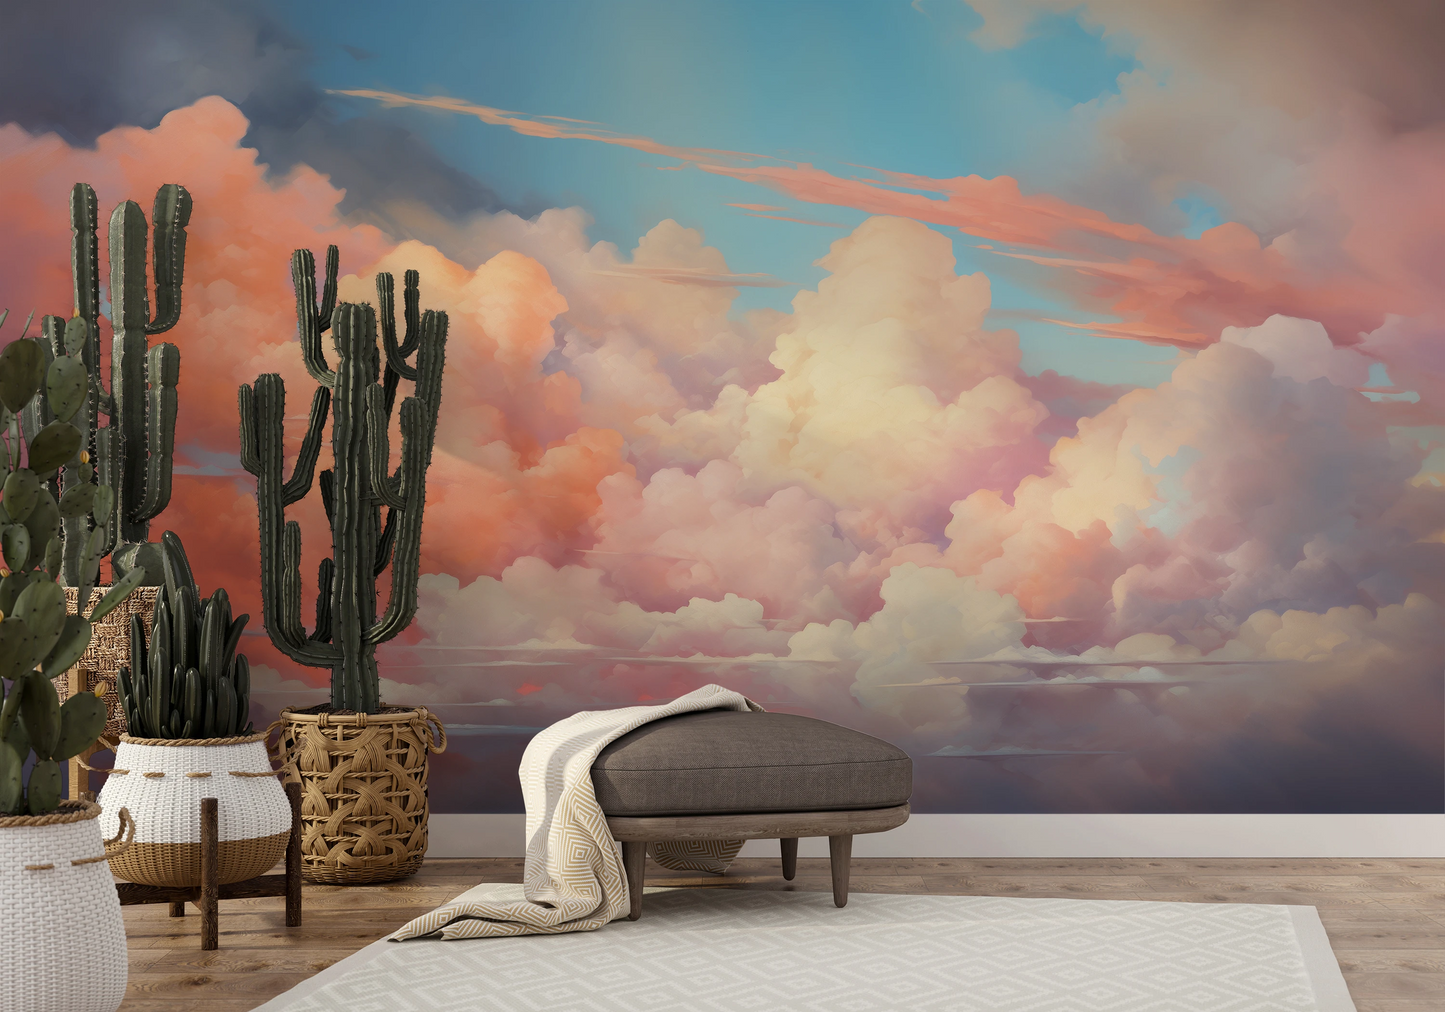 Wzór fototapety o nazwie Cotton Candy Skies pokazanej w kontekście pomieszczenia.